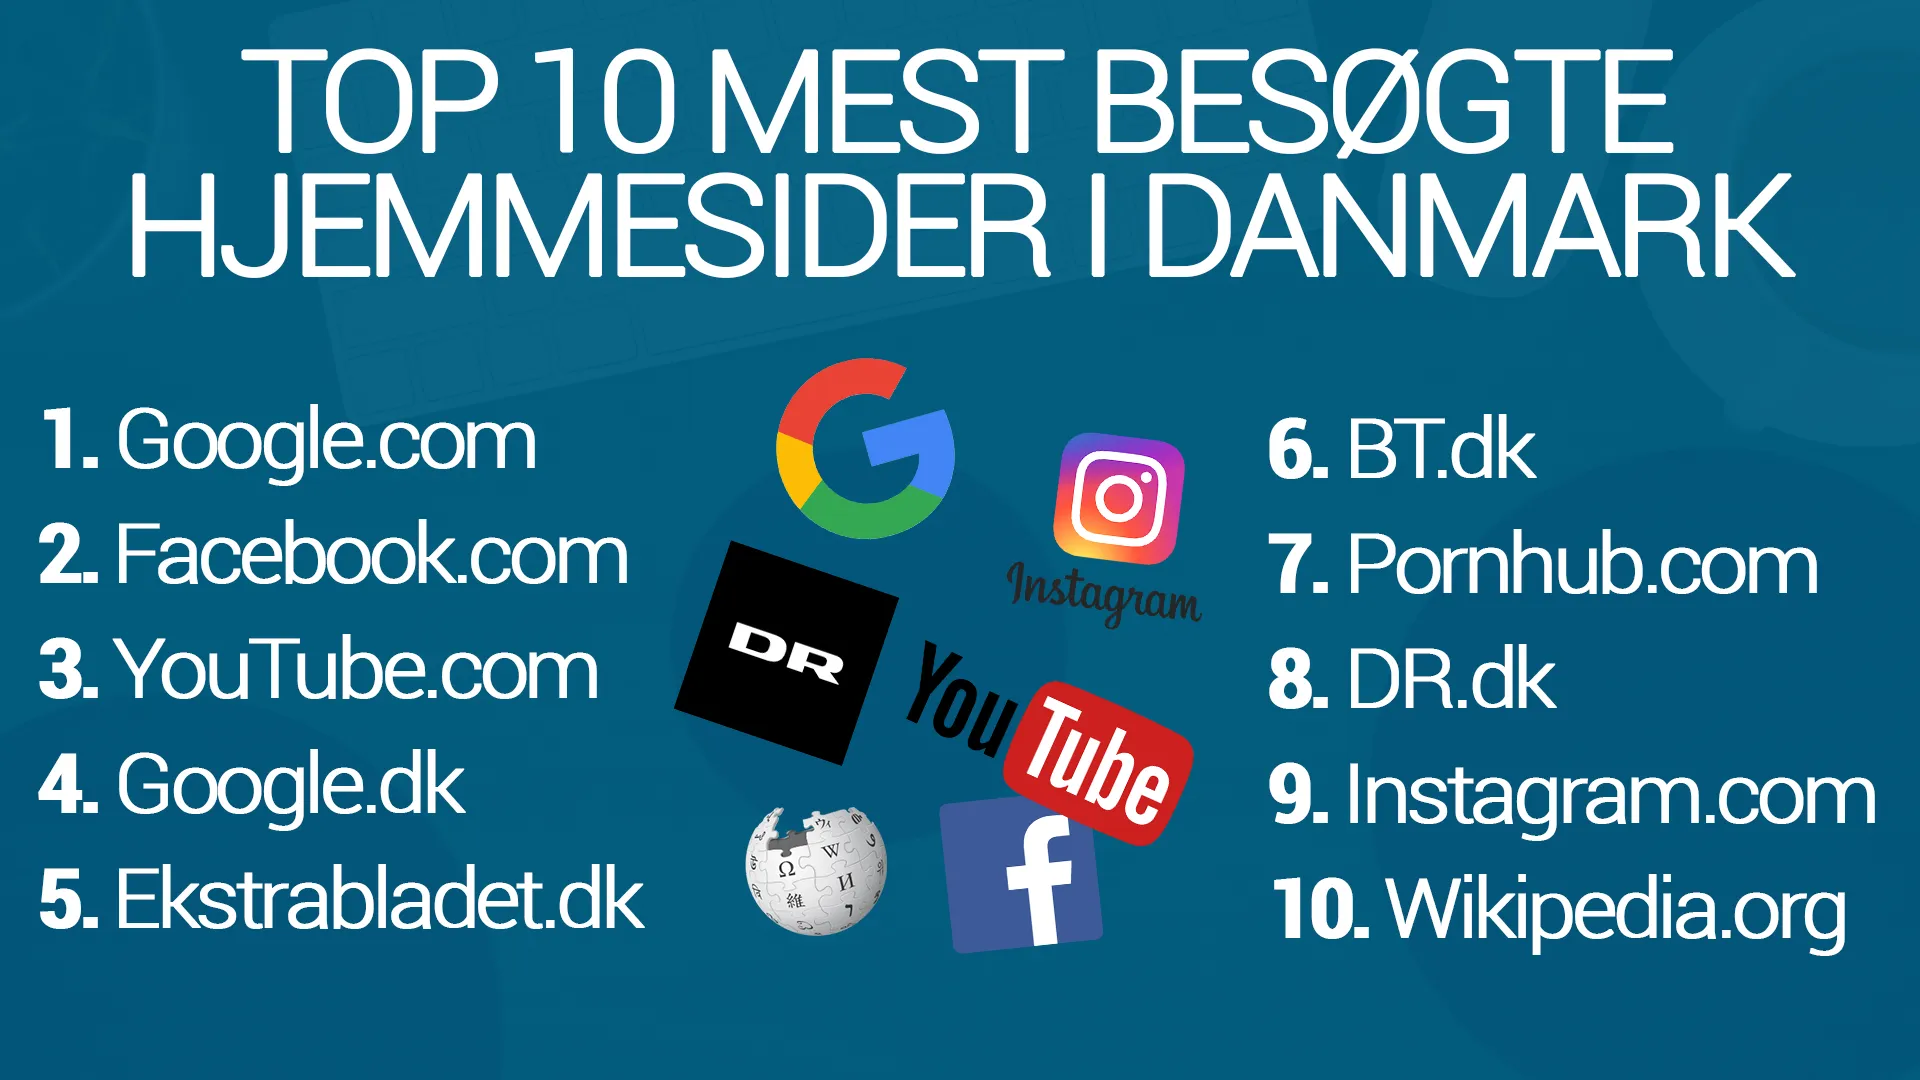 Top 10 mest besøgte hjemmesider i danmark Magicweb.dk